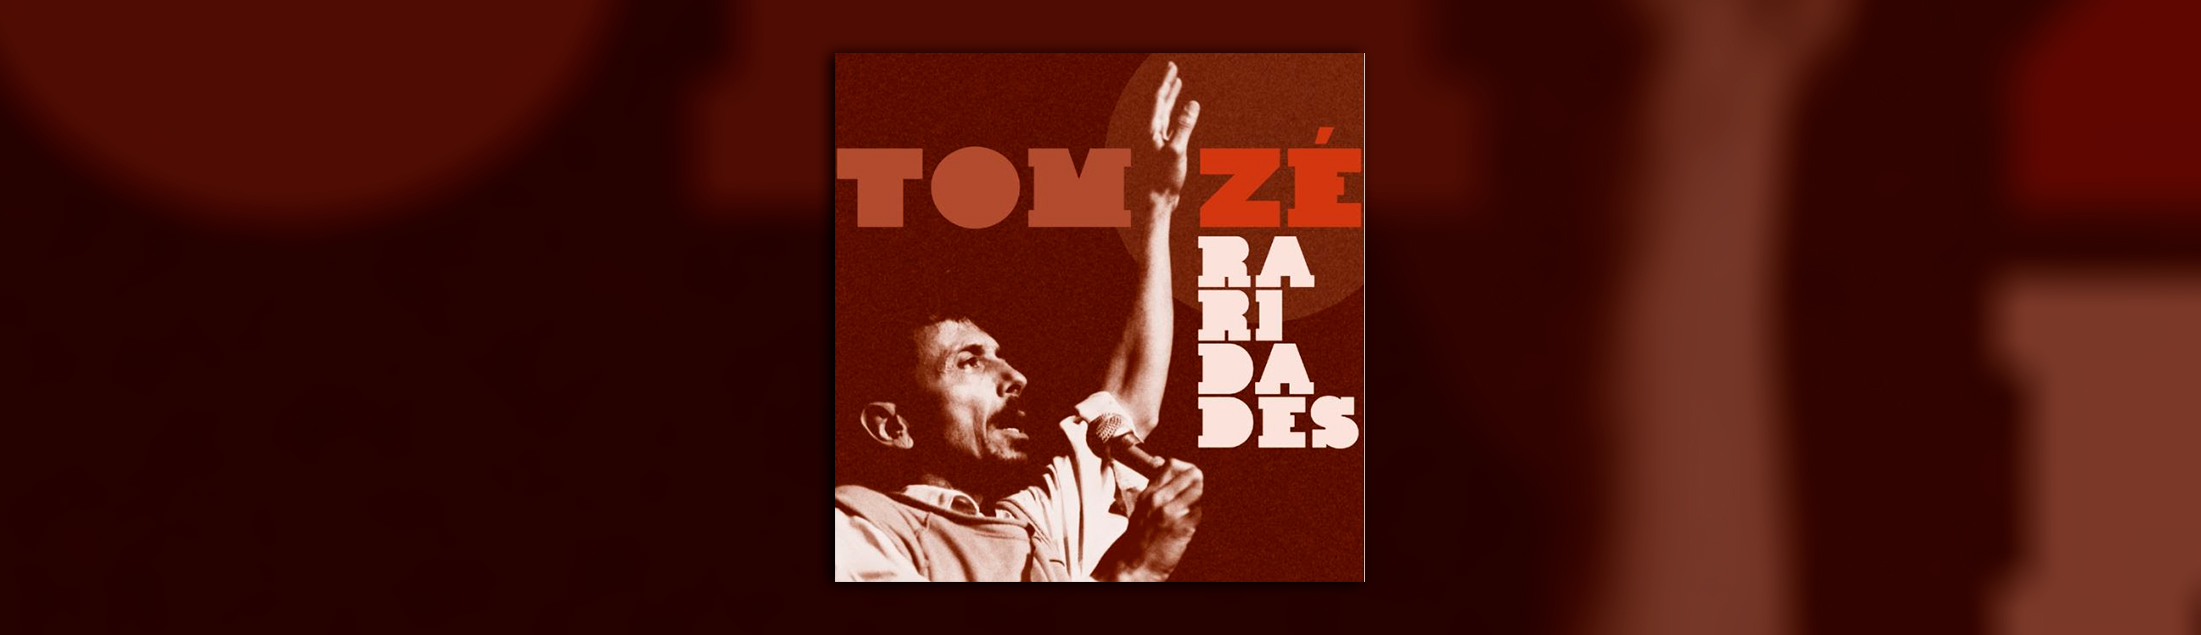 Tom Zé lança álbum 'Raridades' em todas as plataformas digitais